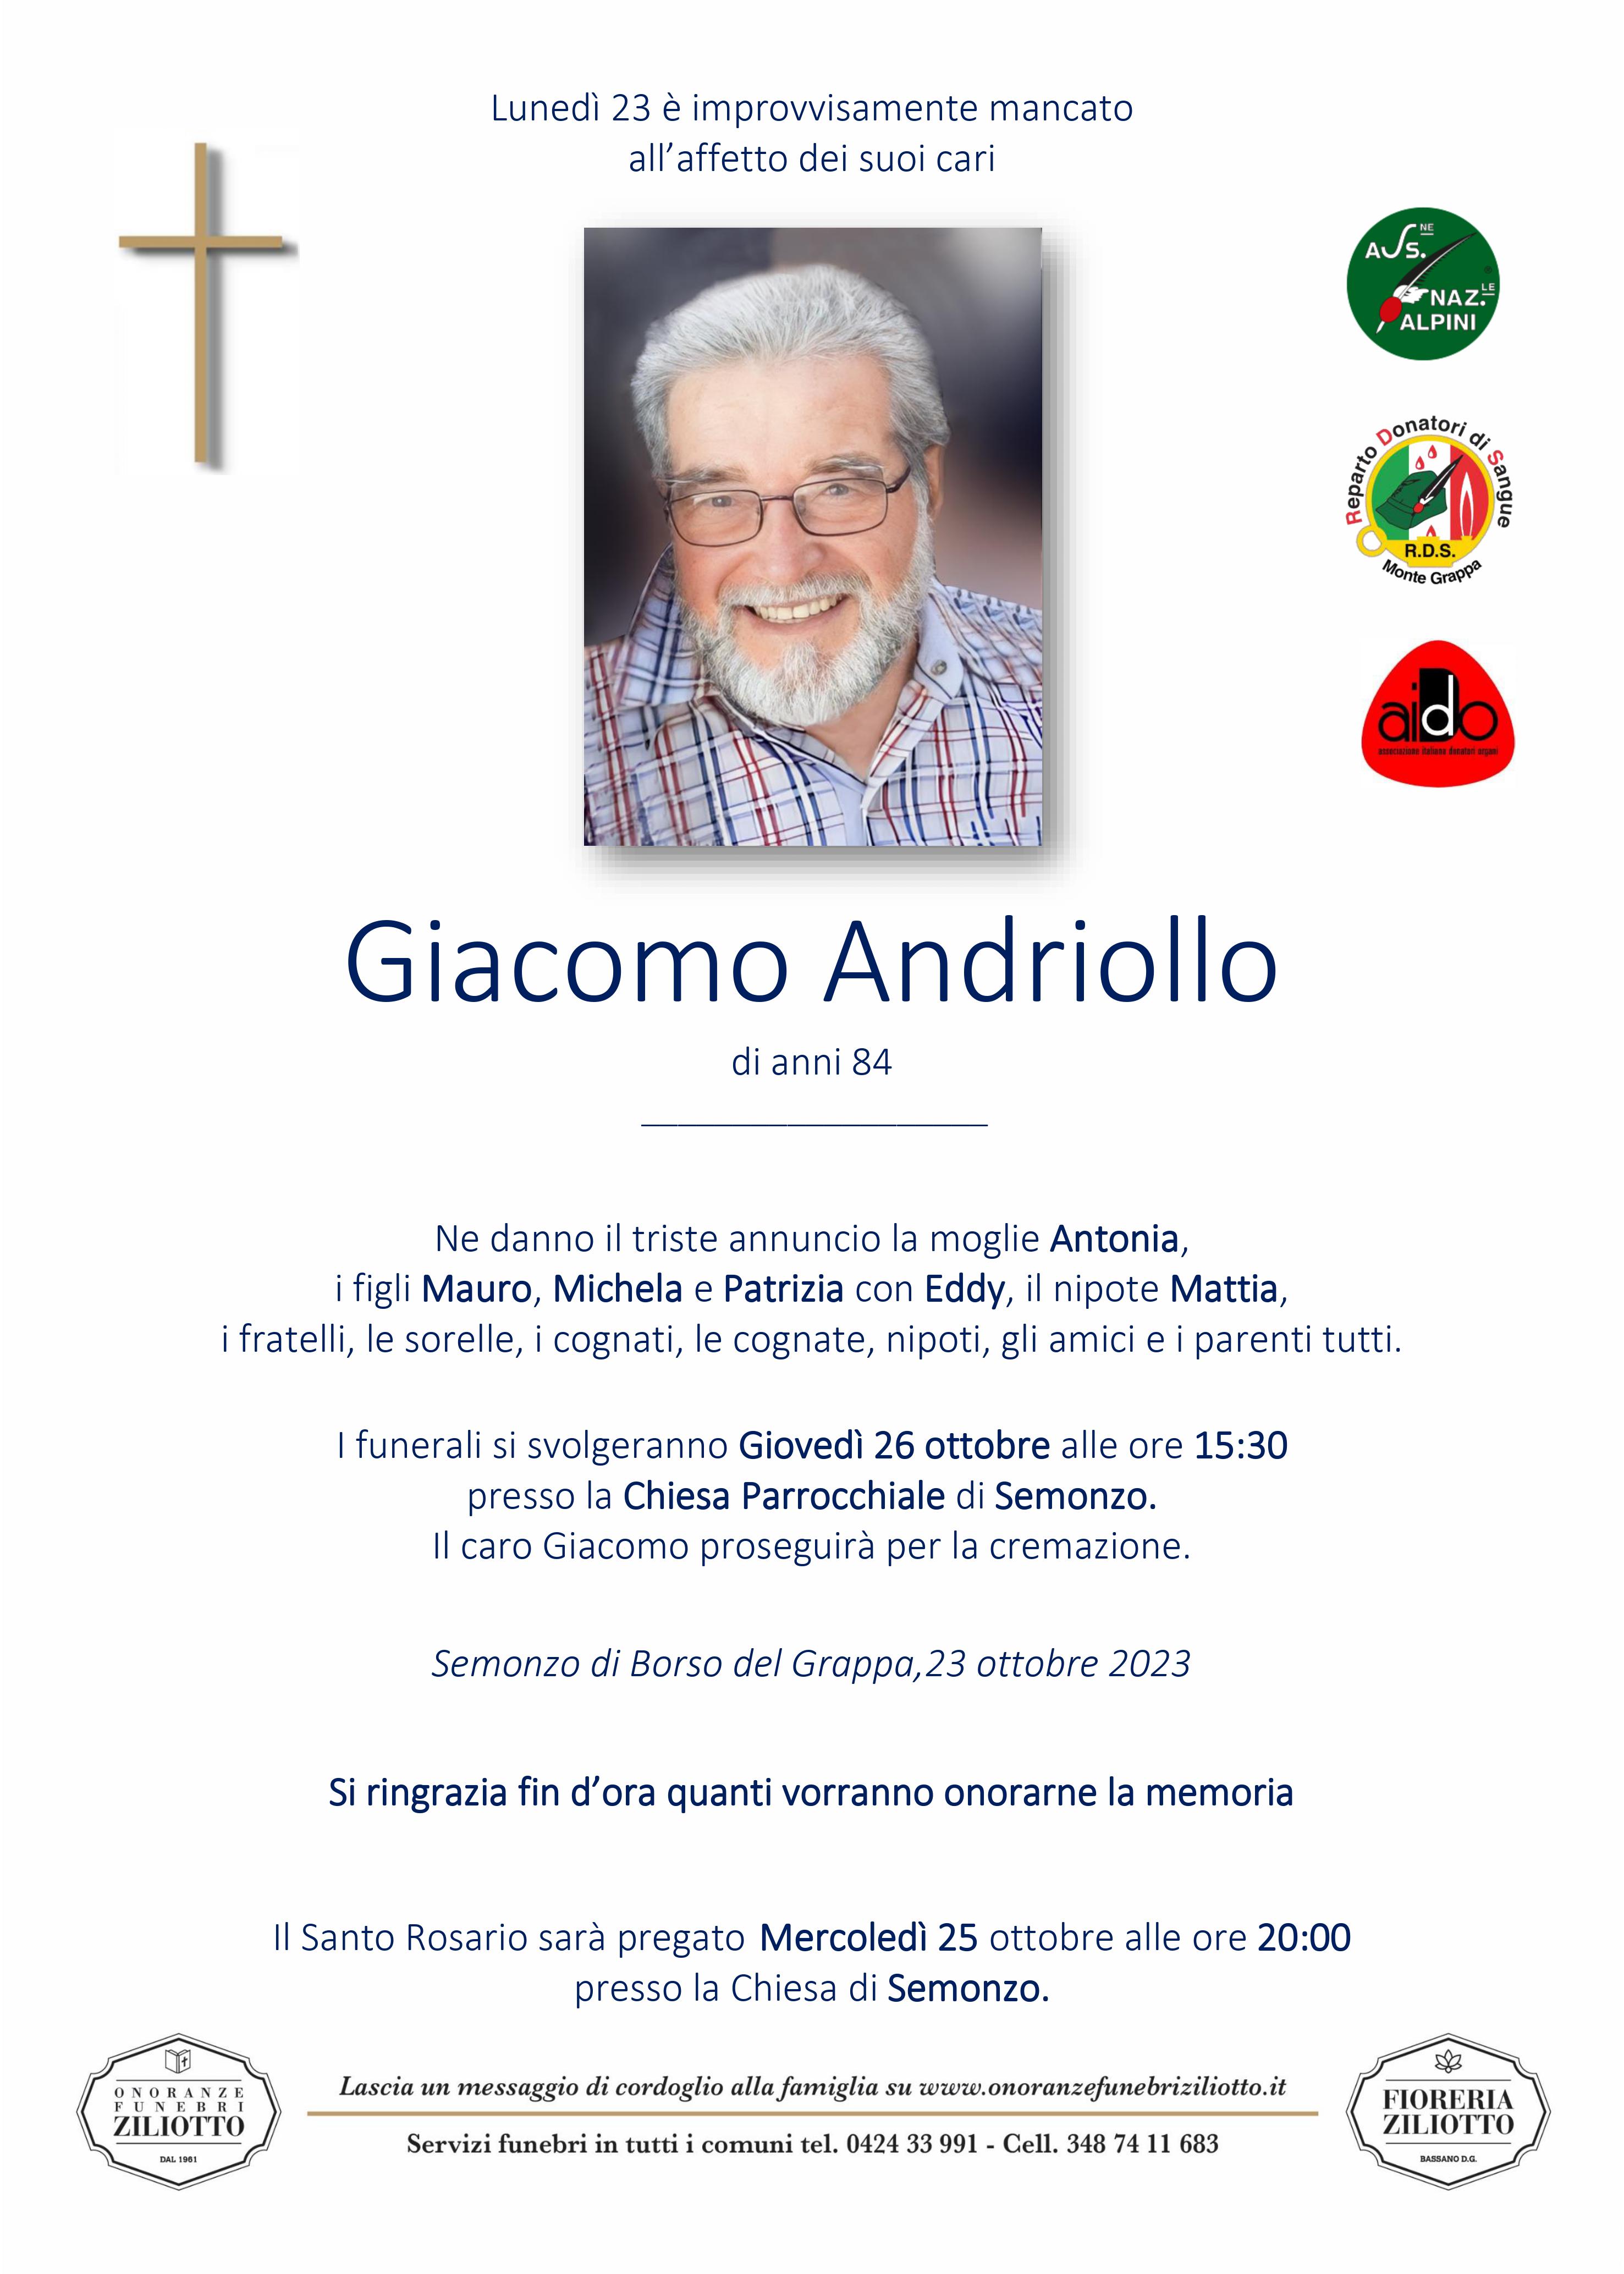 Giacomo Andriollo - 84 anni - Semonzo di Borso del Gr